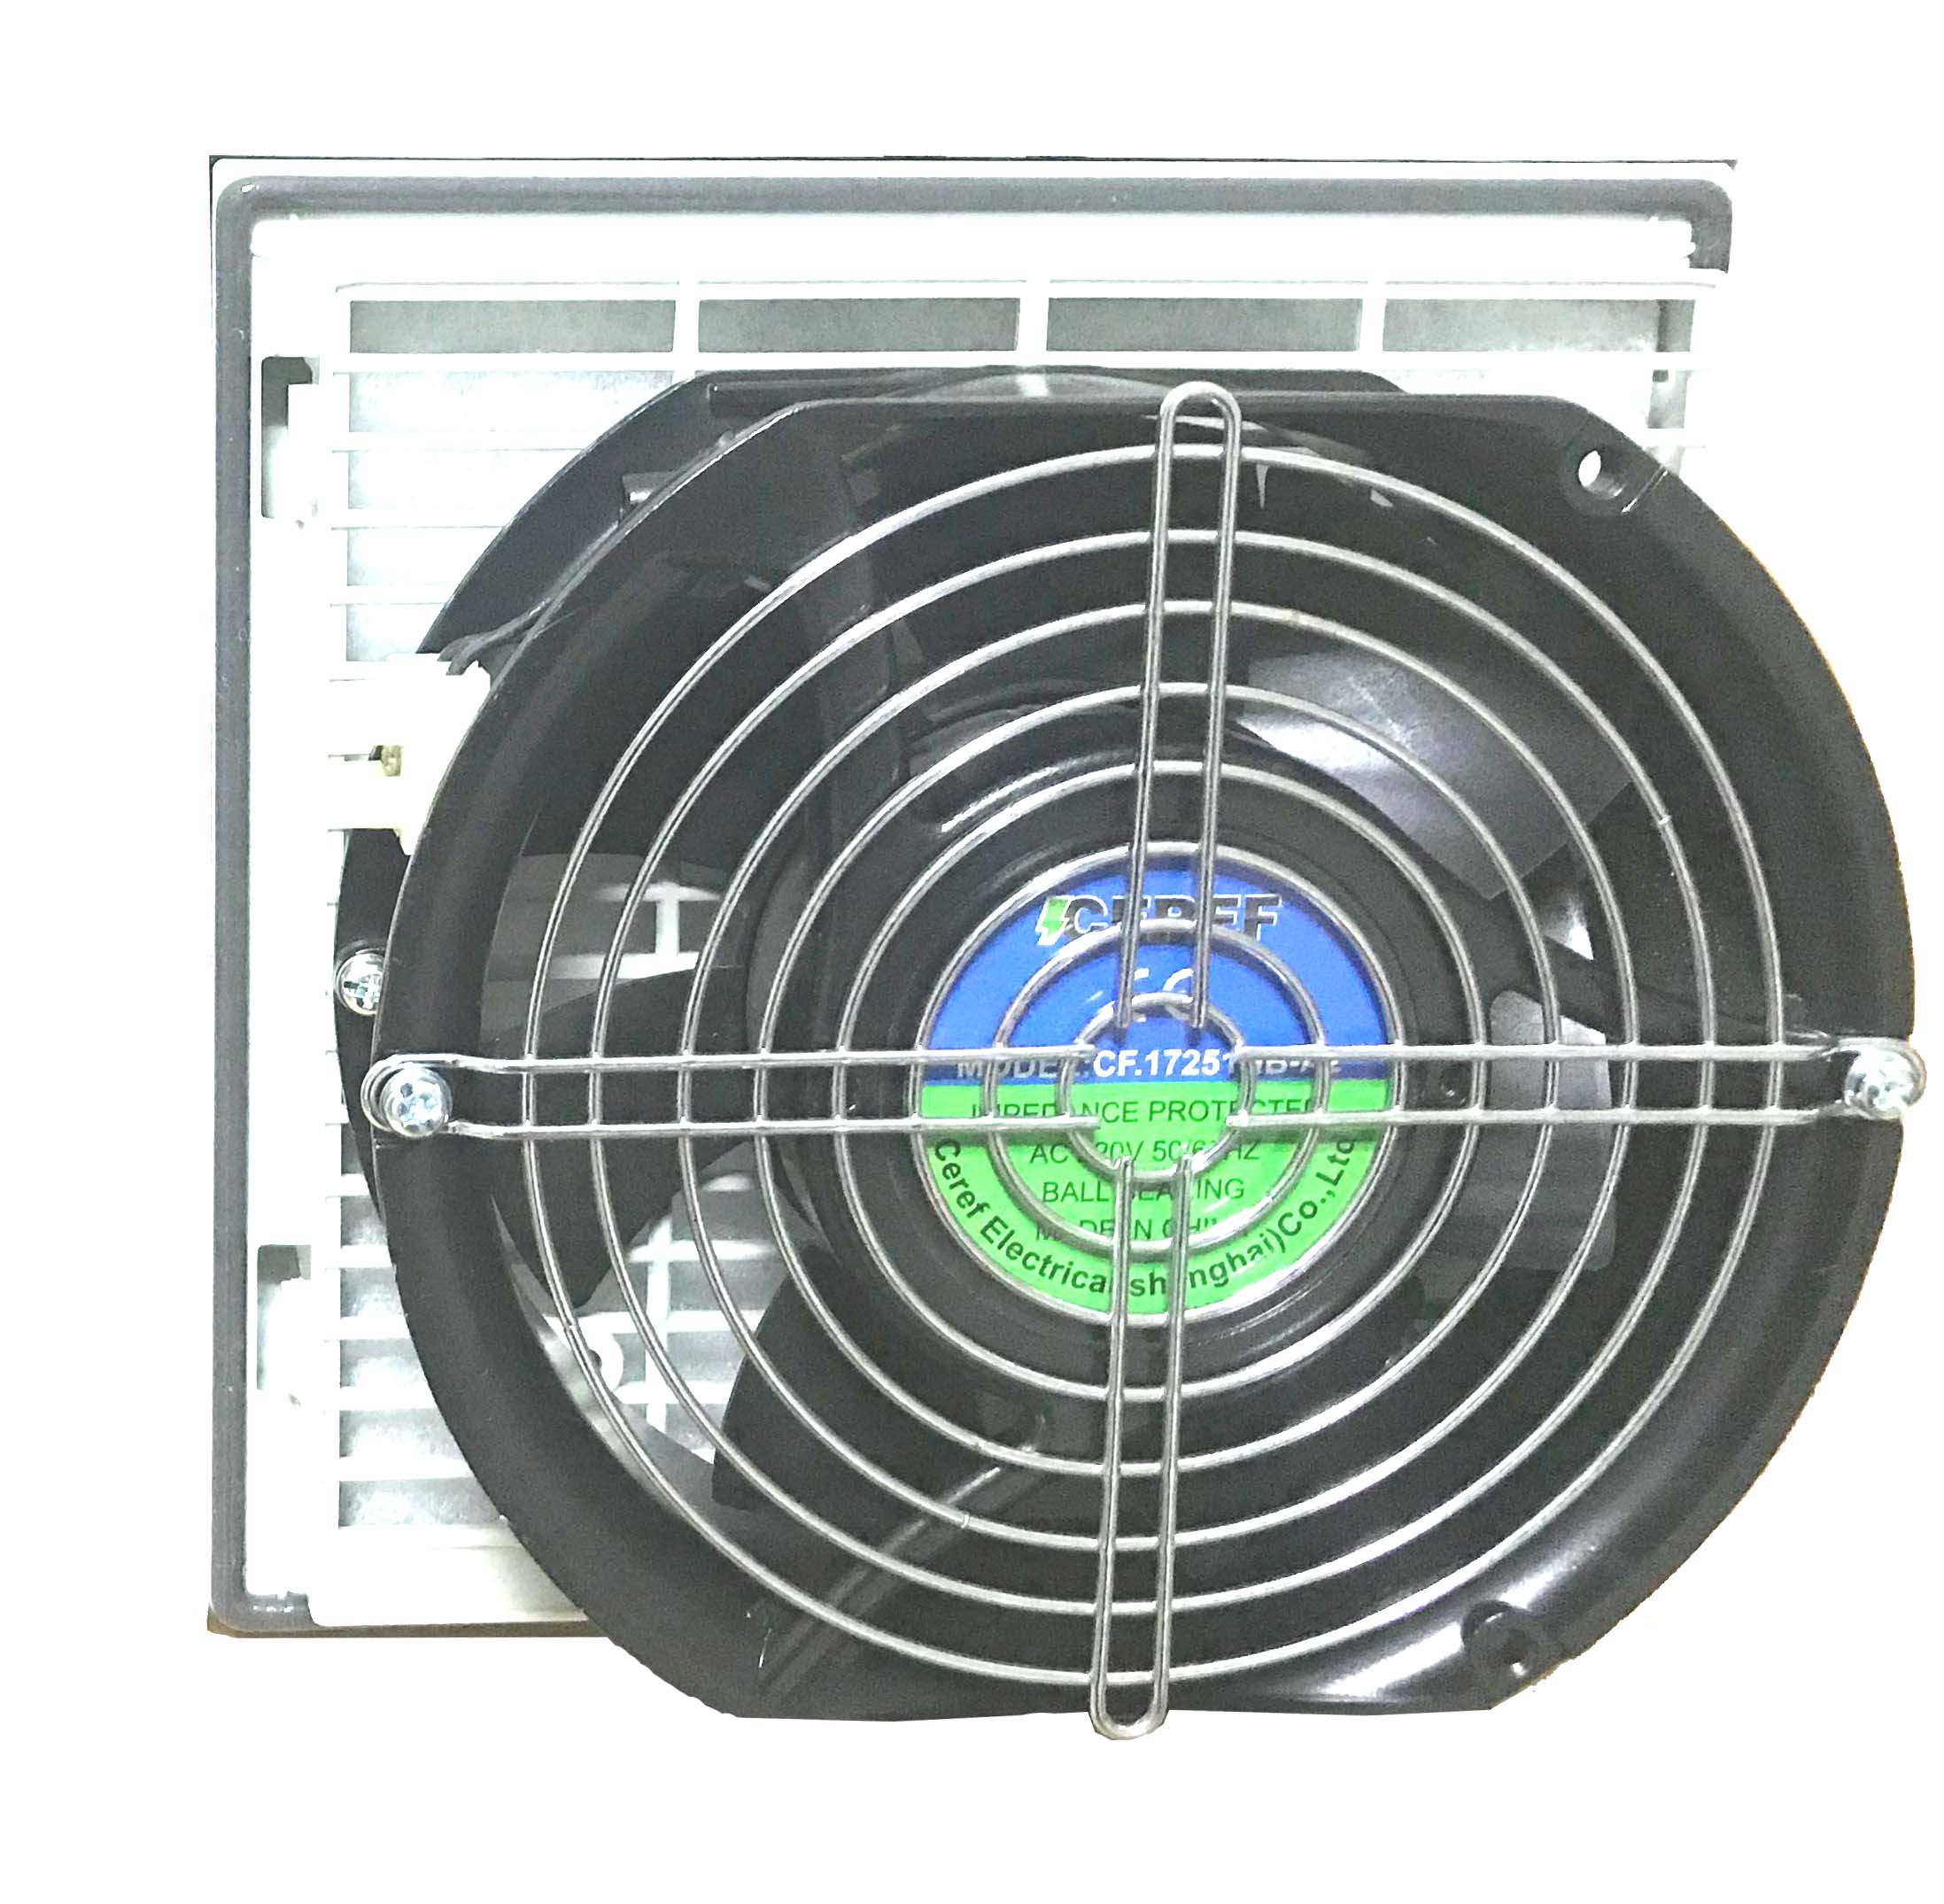 启动柜风扇过滤器 威图柜替代风扇过滤器 电磁加热控制柜风扇过滤器 CH9804 舍利弗CEREF